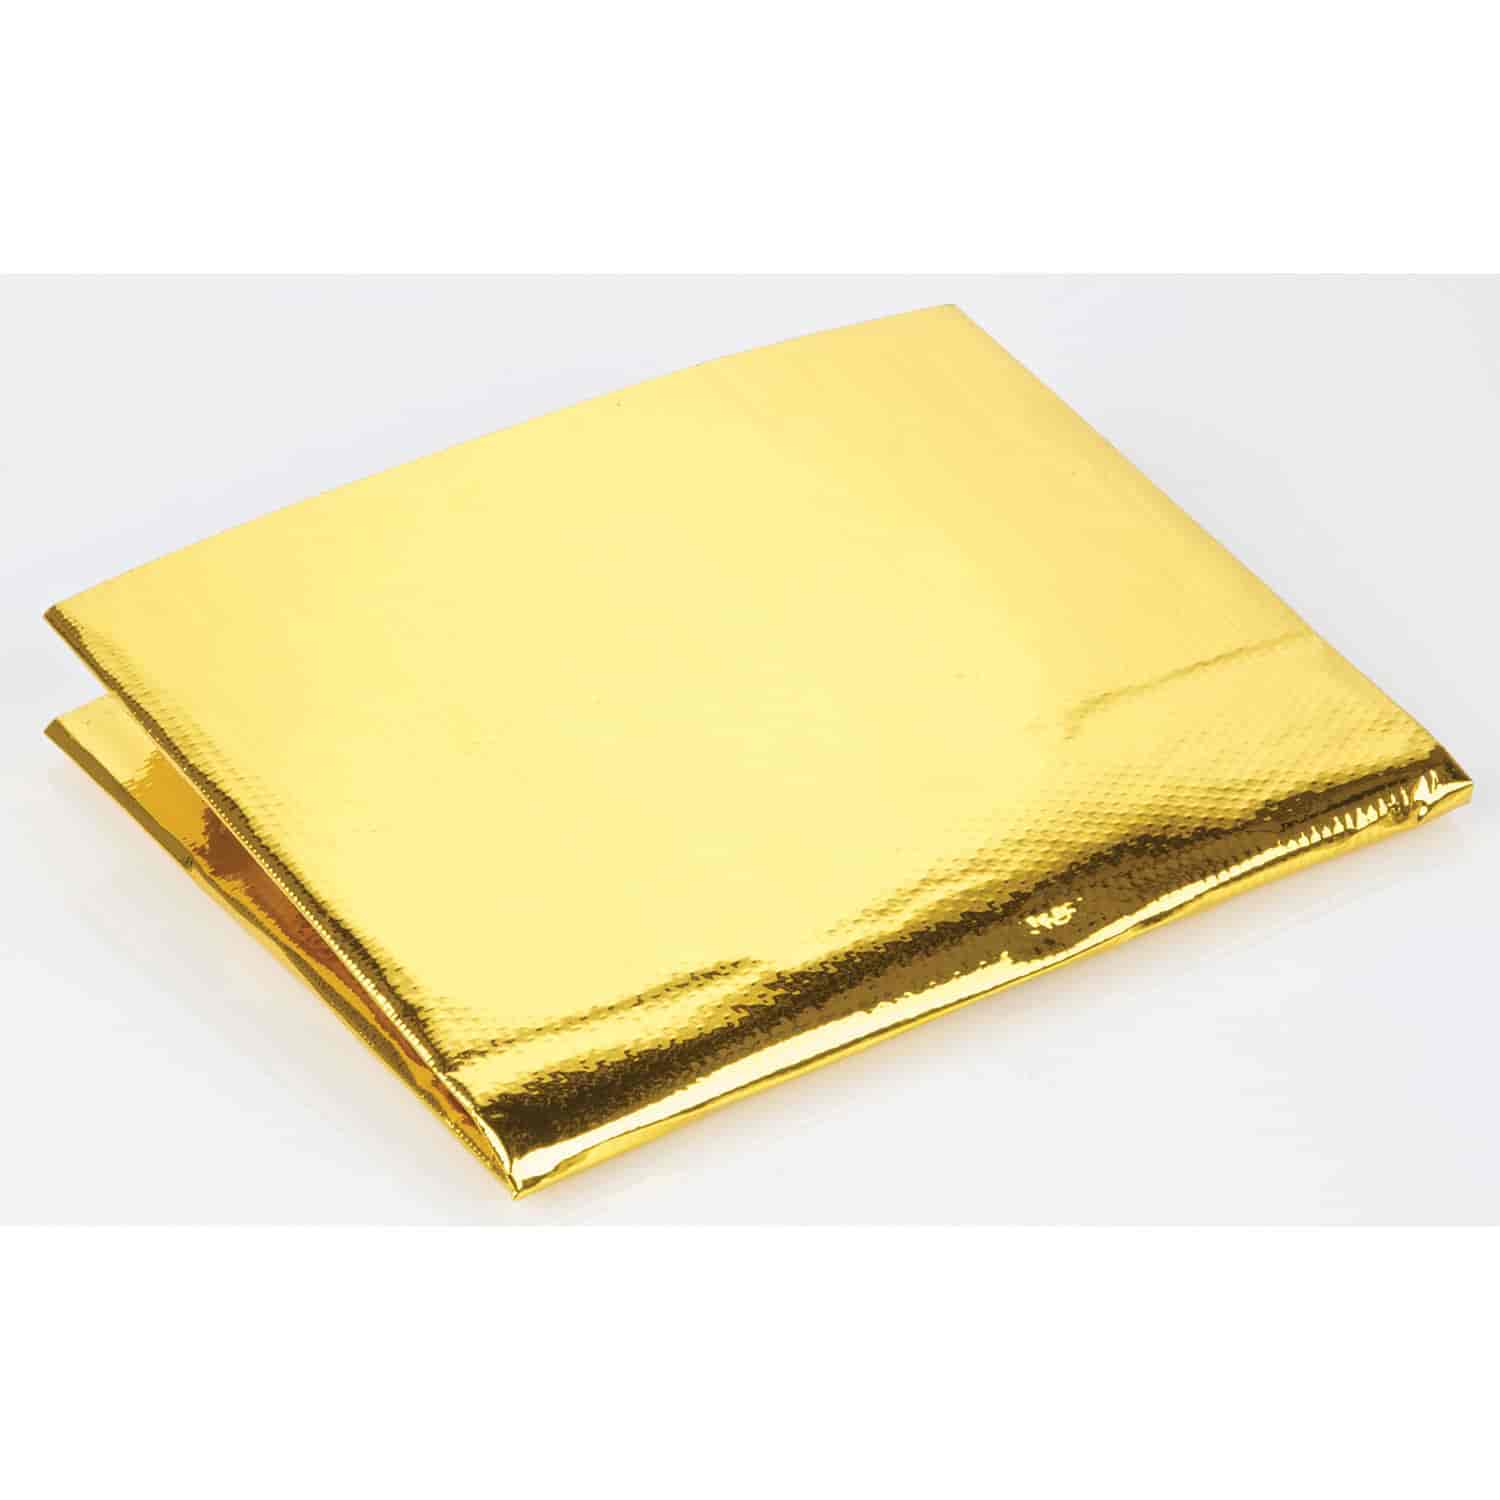 Reflective Gold Heat Shield 12" x 24" Sheet